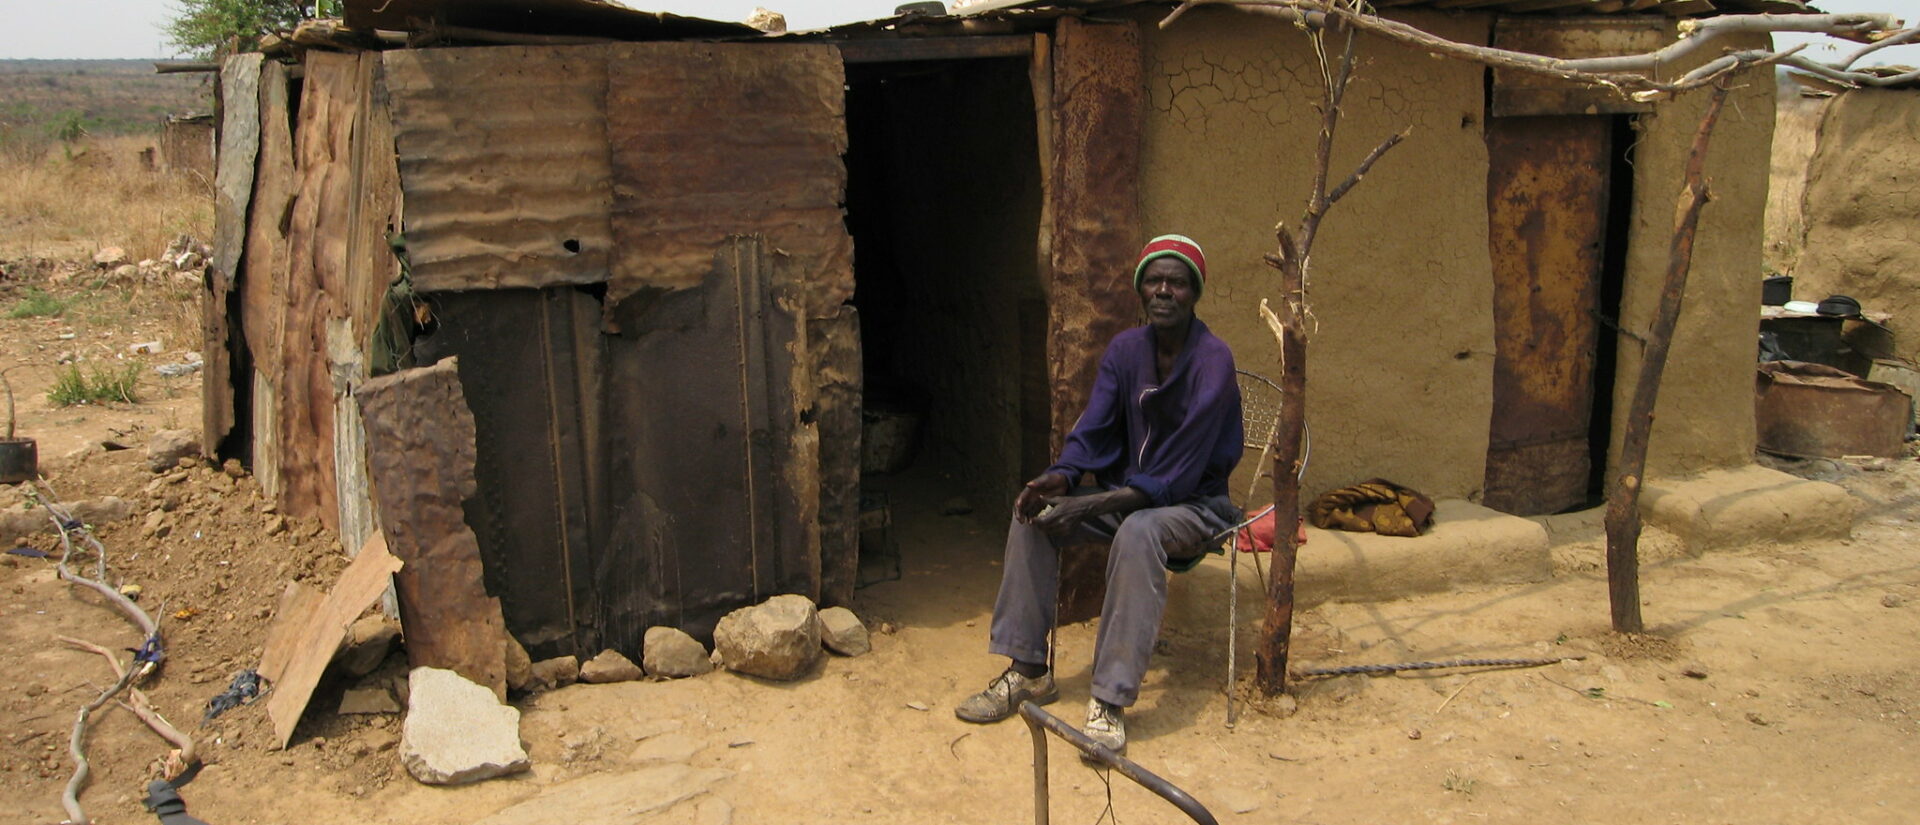 Les populations rurales du Zimbabwe souffrent des sécheresses à répétition | © RNW/Flickr/CC BY-ND 2.0